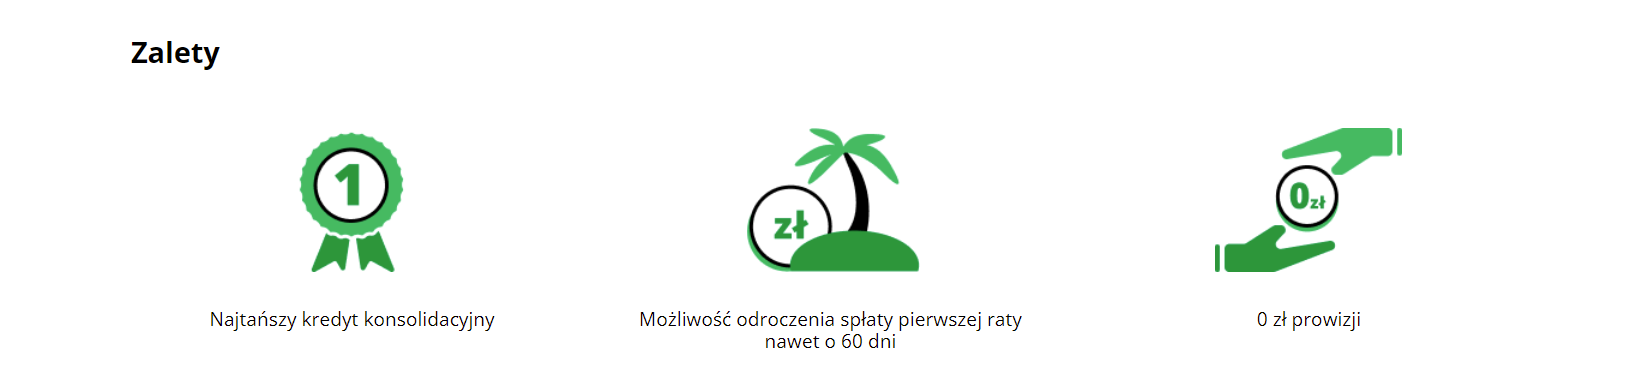 Fot. Screen / kasastefczyka.pl (z dnia 07/10/2021)